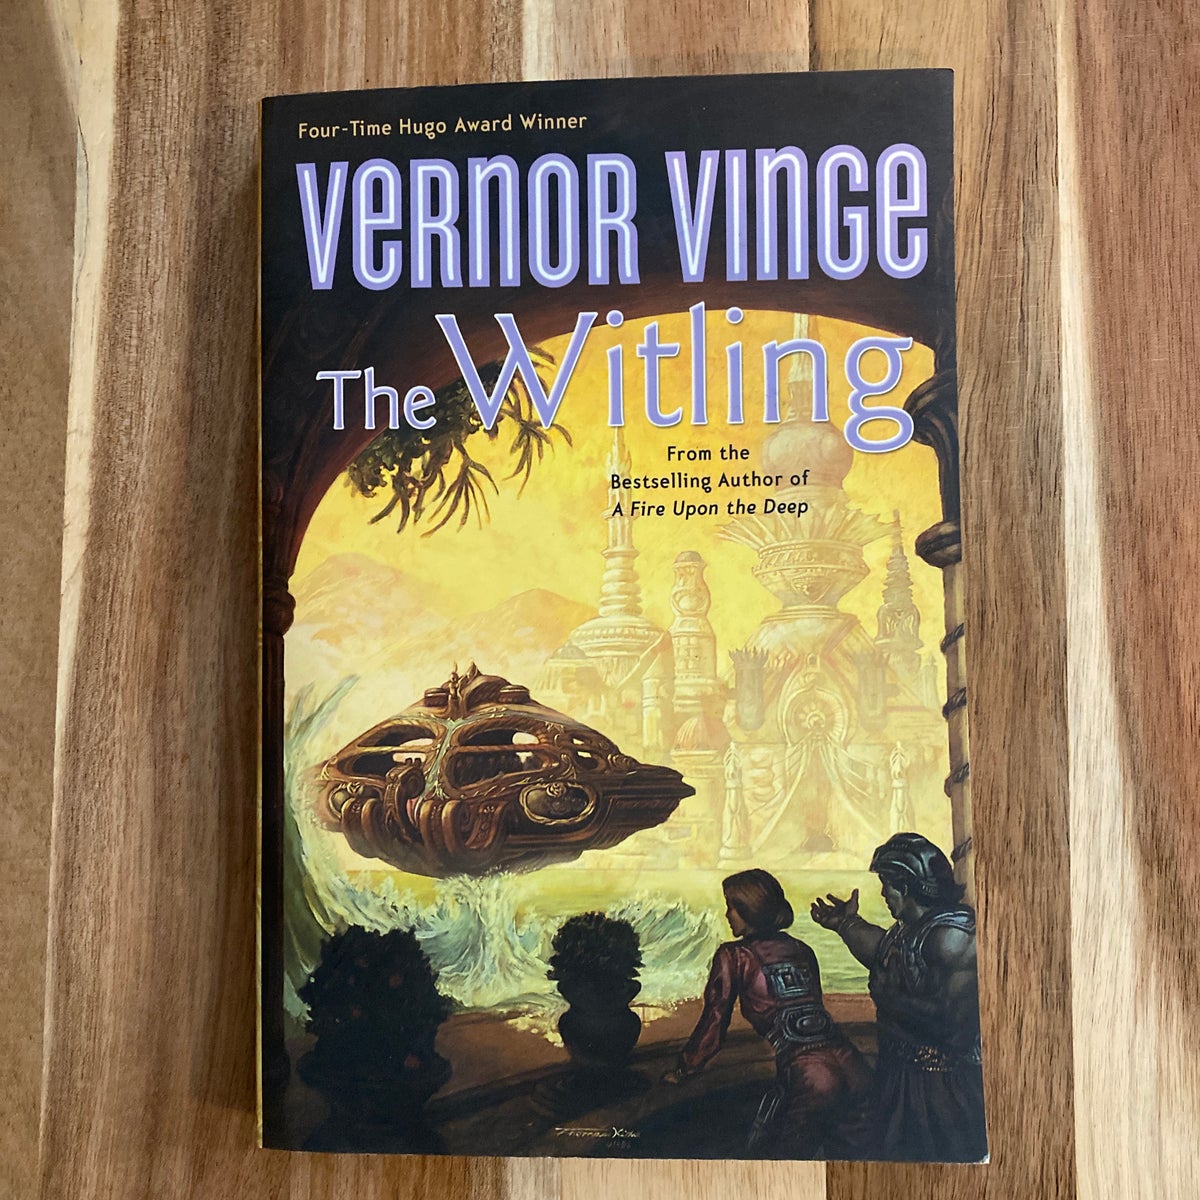 THE WITLING, Vernor Vinge